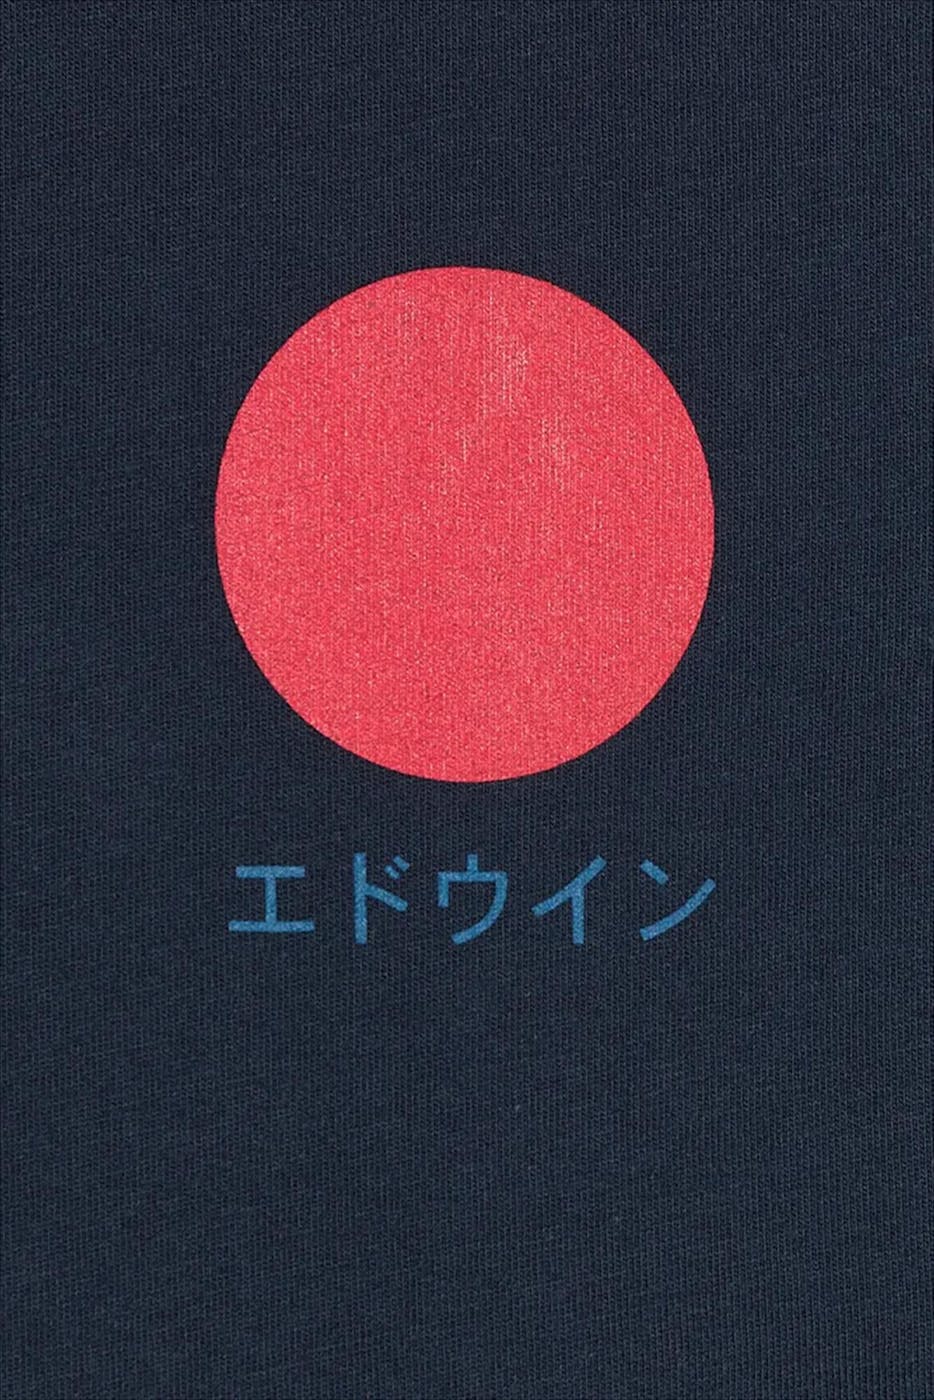 Edwin - Blauwe Japanese Sun T-shirt